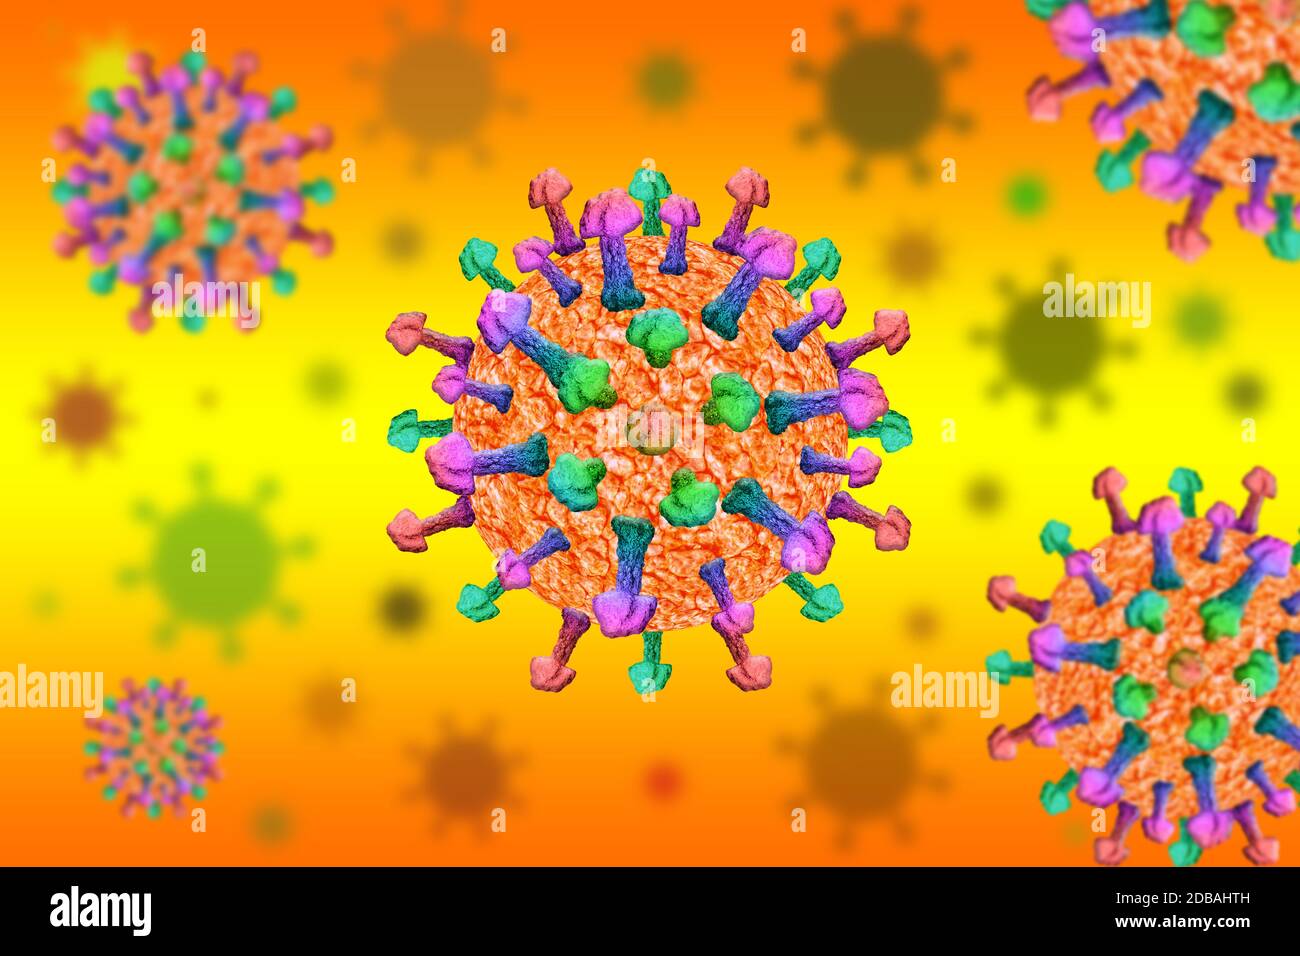 Ansteckender Coronavirus-Ausbruch und Coronaviren Influenza medizinische Krise als gefährliche Grippesteim Fälle oder Pandemie öffentlichen Gesundheitsrisiko Stockfoto